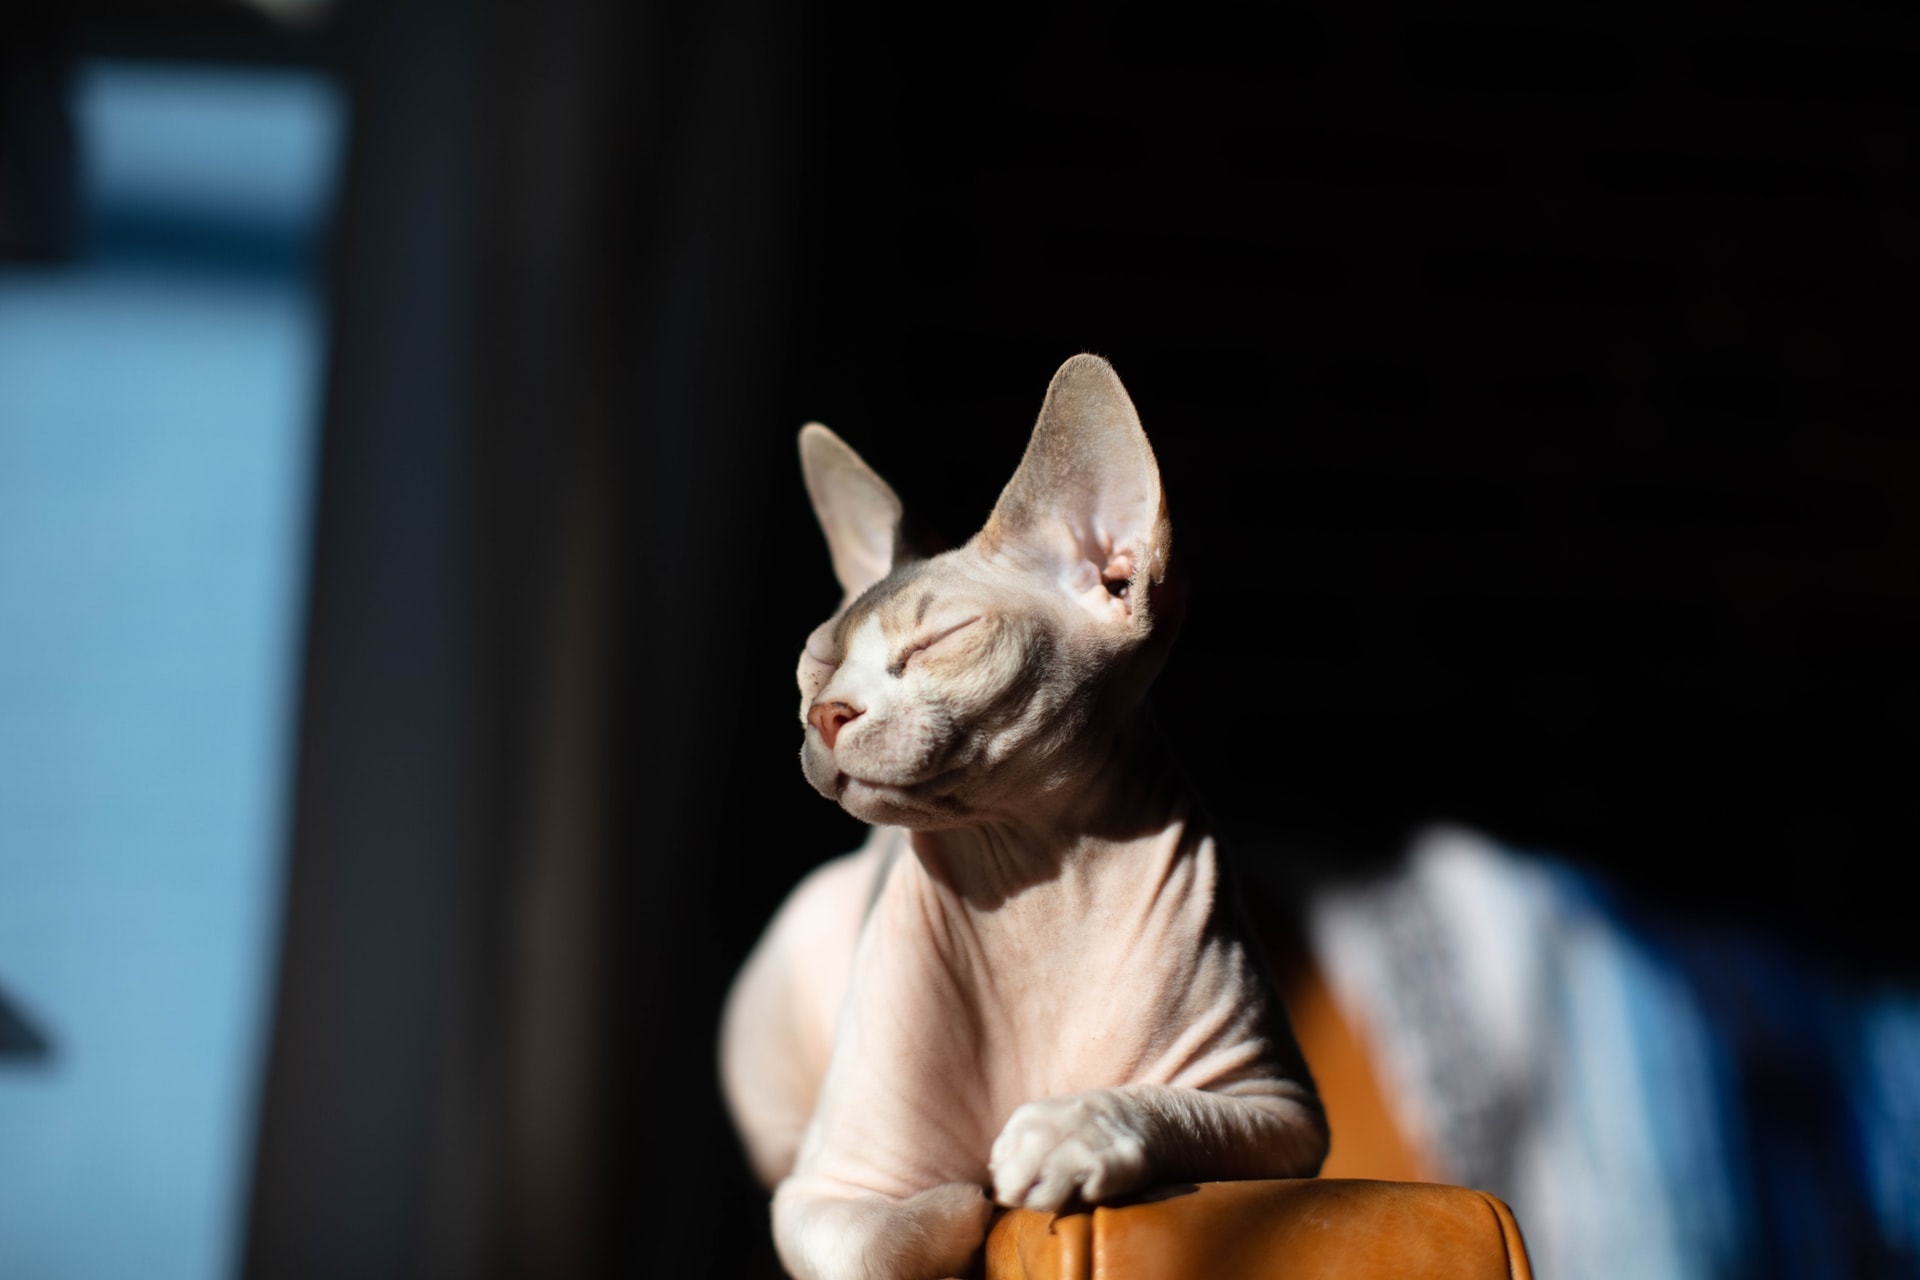 स्फिंक्स बिल्ली सूरज की गर्मी में सोफे की बांह पर लेटी हुई है